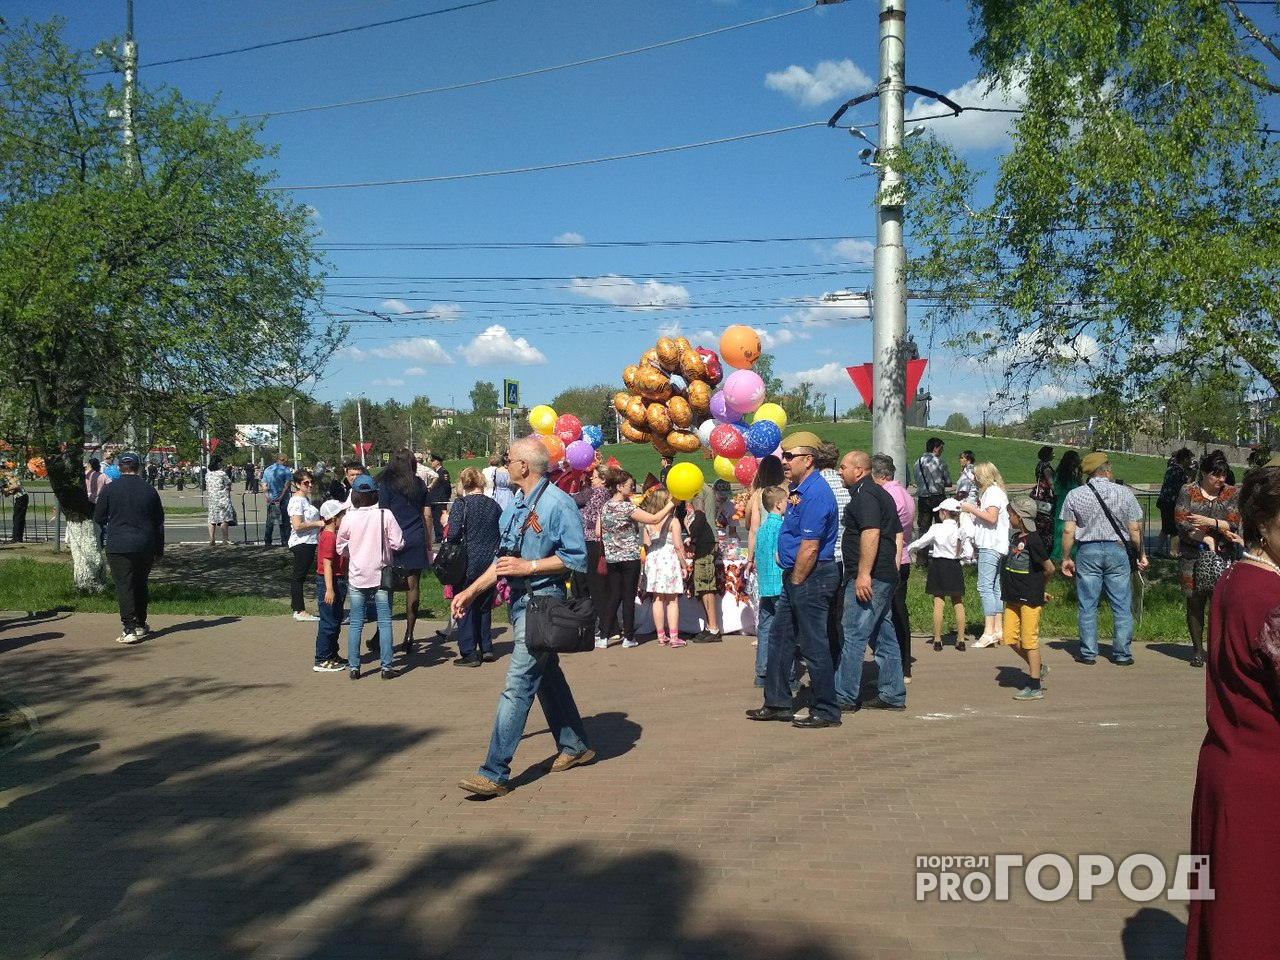 Пензенцы целыми семьями приходят в сквер "Журавли" у памятника Победы